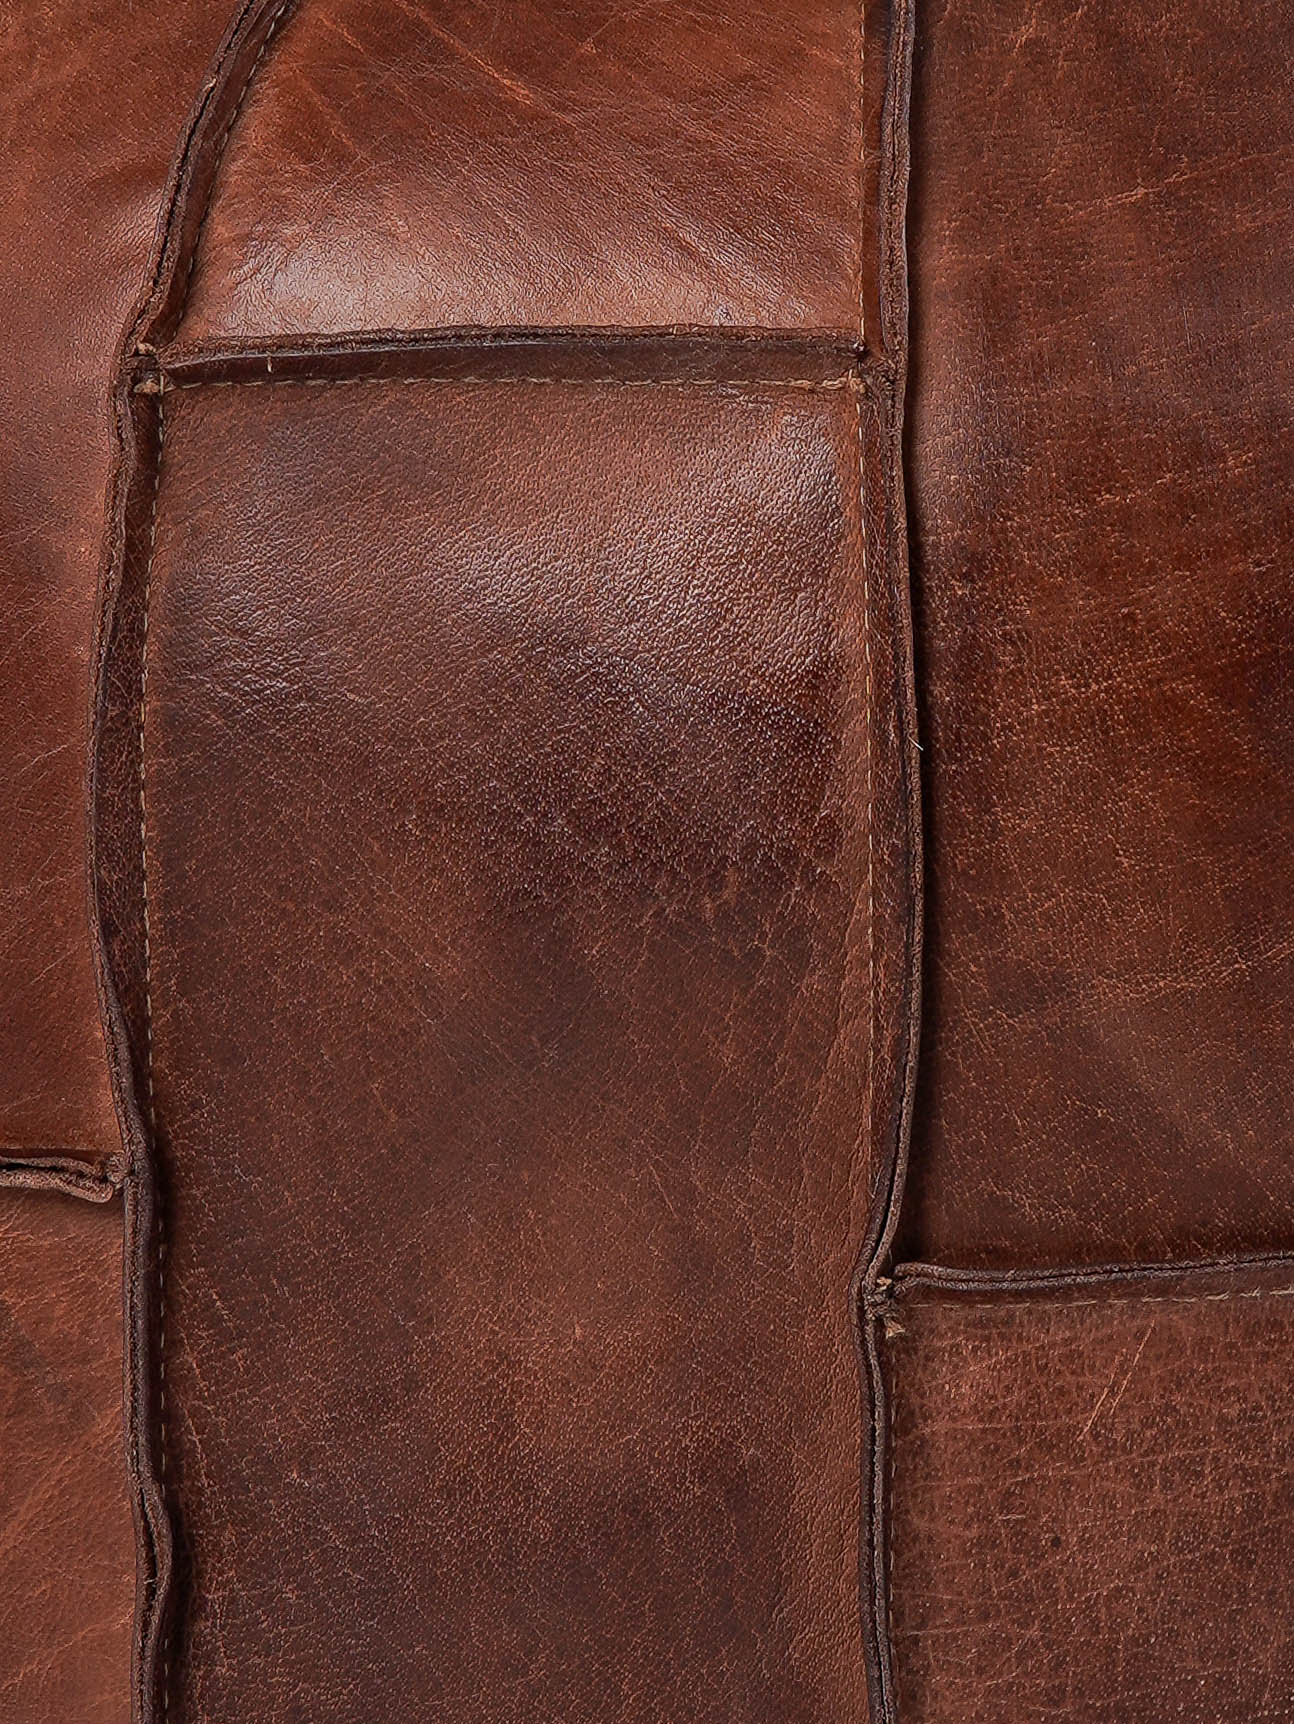 Prairie Stitch Leather Pouf